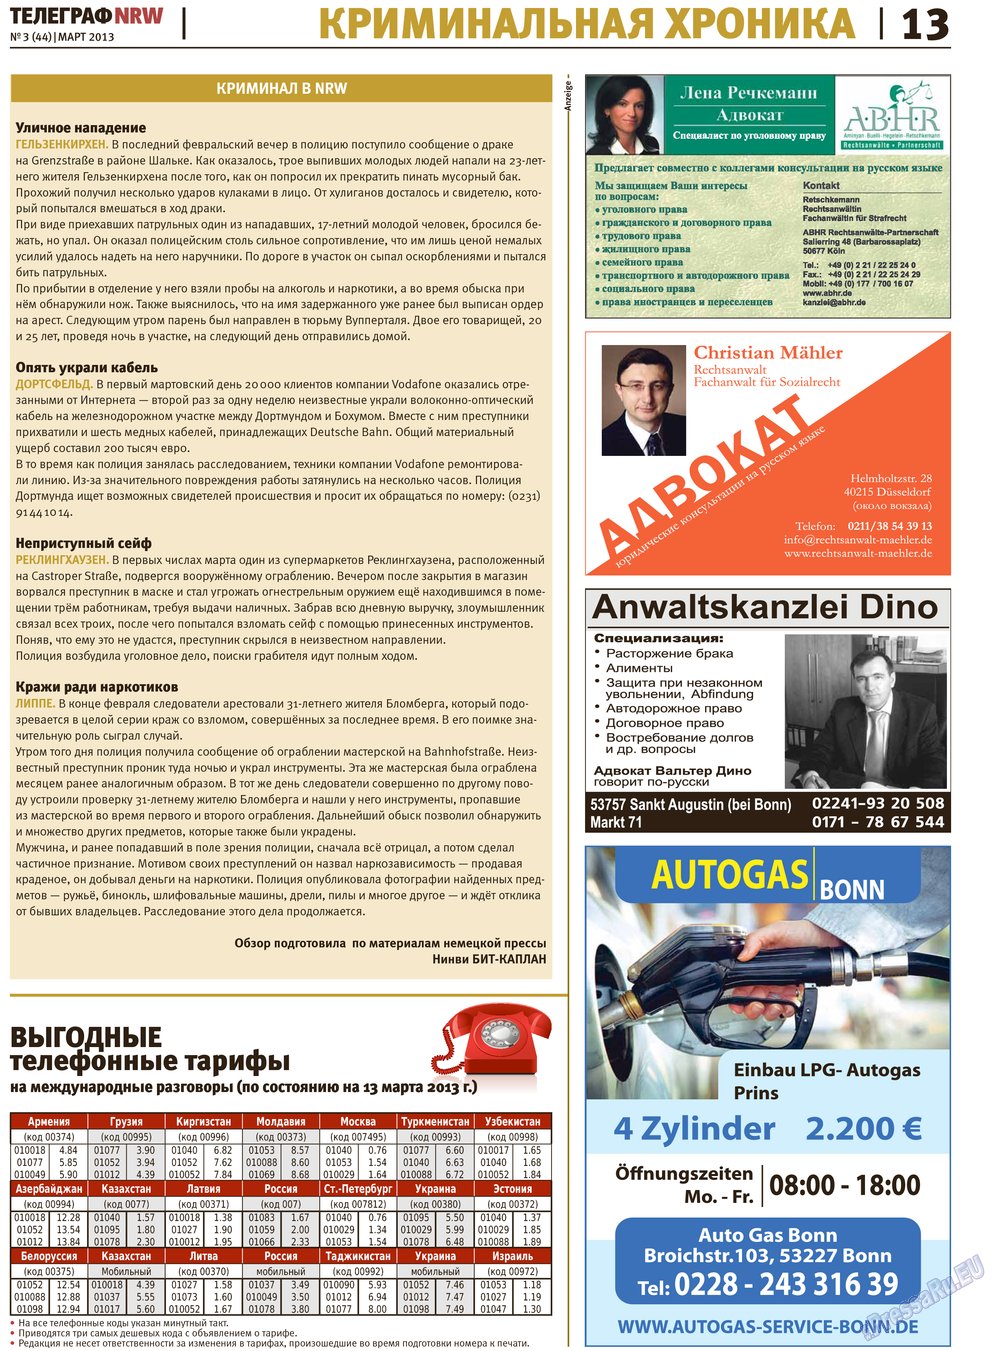 Телеграф NRW (газета). 2013 год, номер 3, стр. 13